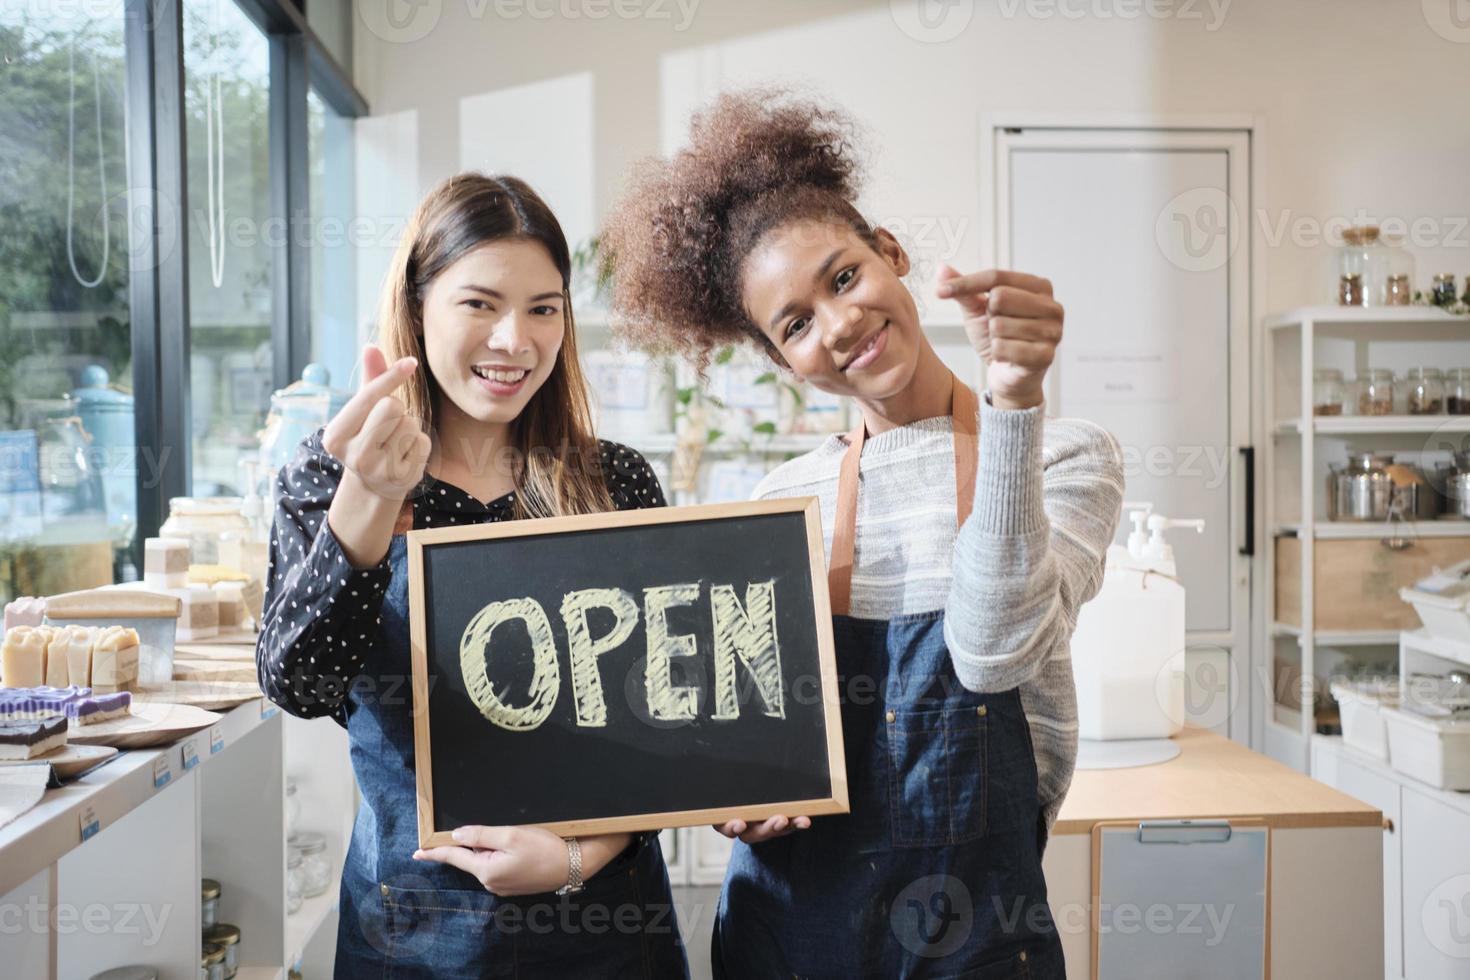 deux jeunes commerçantes montrent un panneau ouvert avec des sourires joyeux dans un magasin de recharge, un travail heureux avec des produits biologiques, des produits d'épicerie zéro déchet, des marchandises respectueuses de l'environnement et des entreprises durables. photo